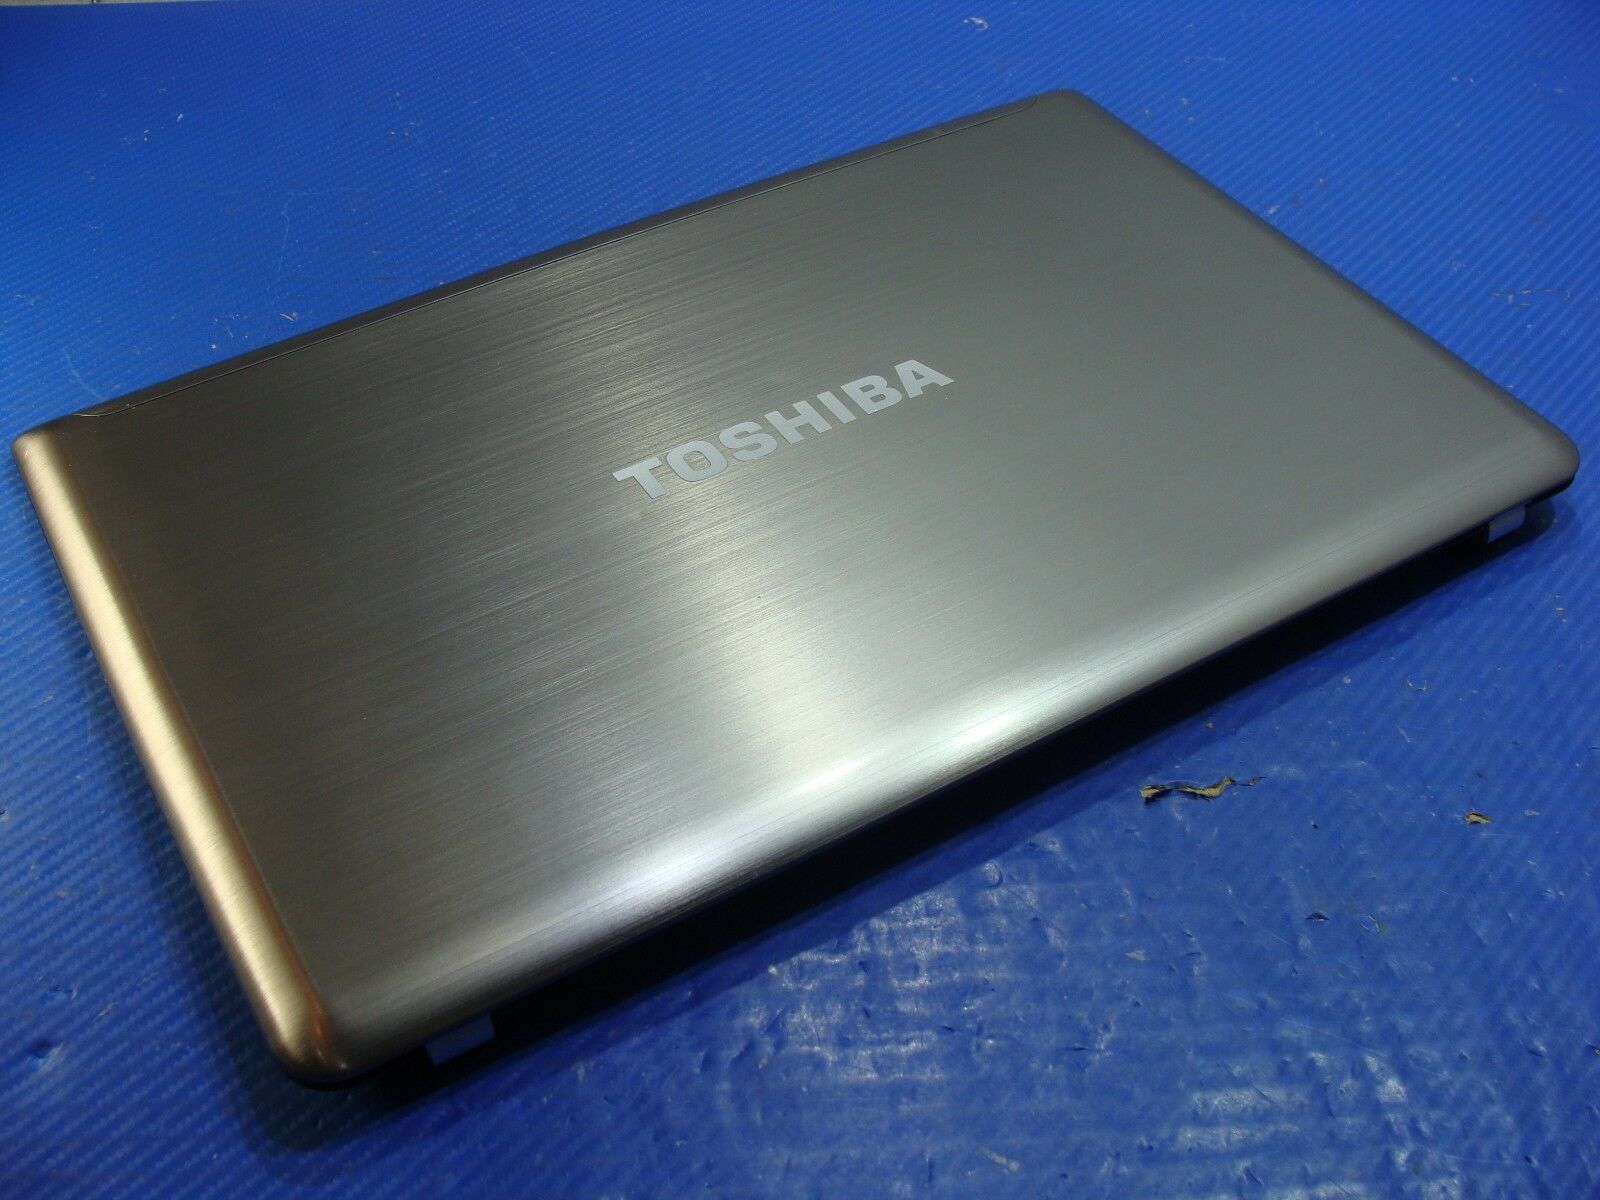 Toshiba Satellite P850-321 15.6